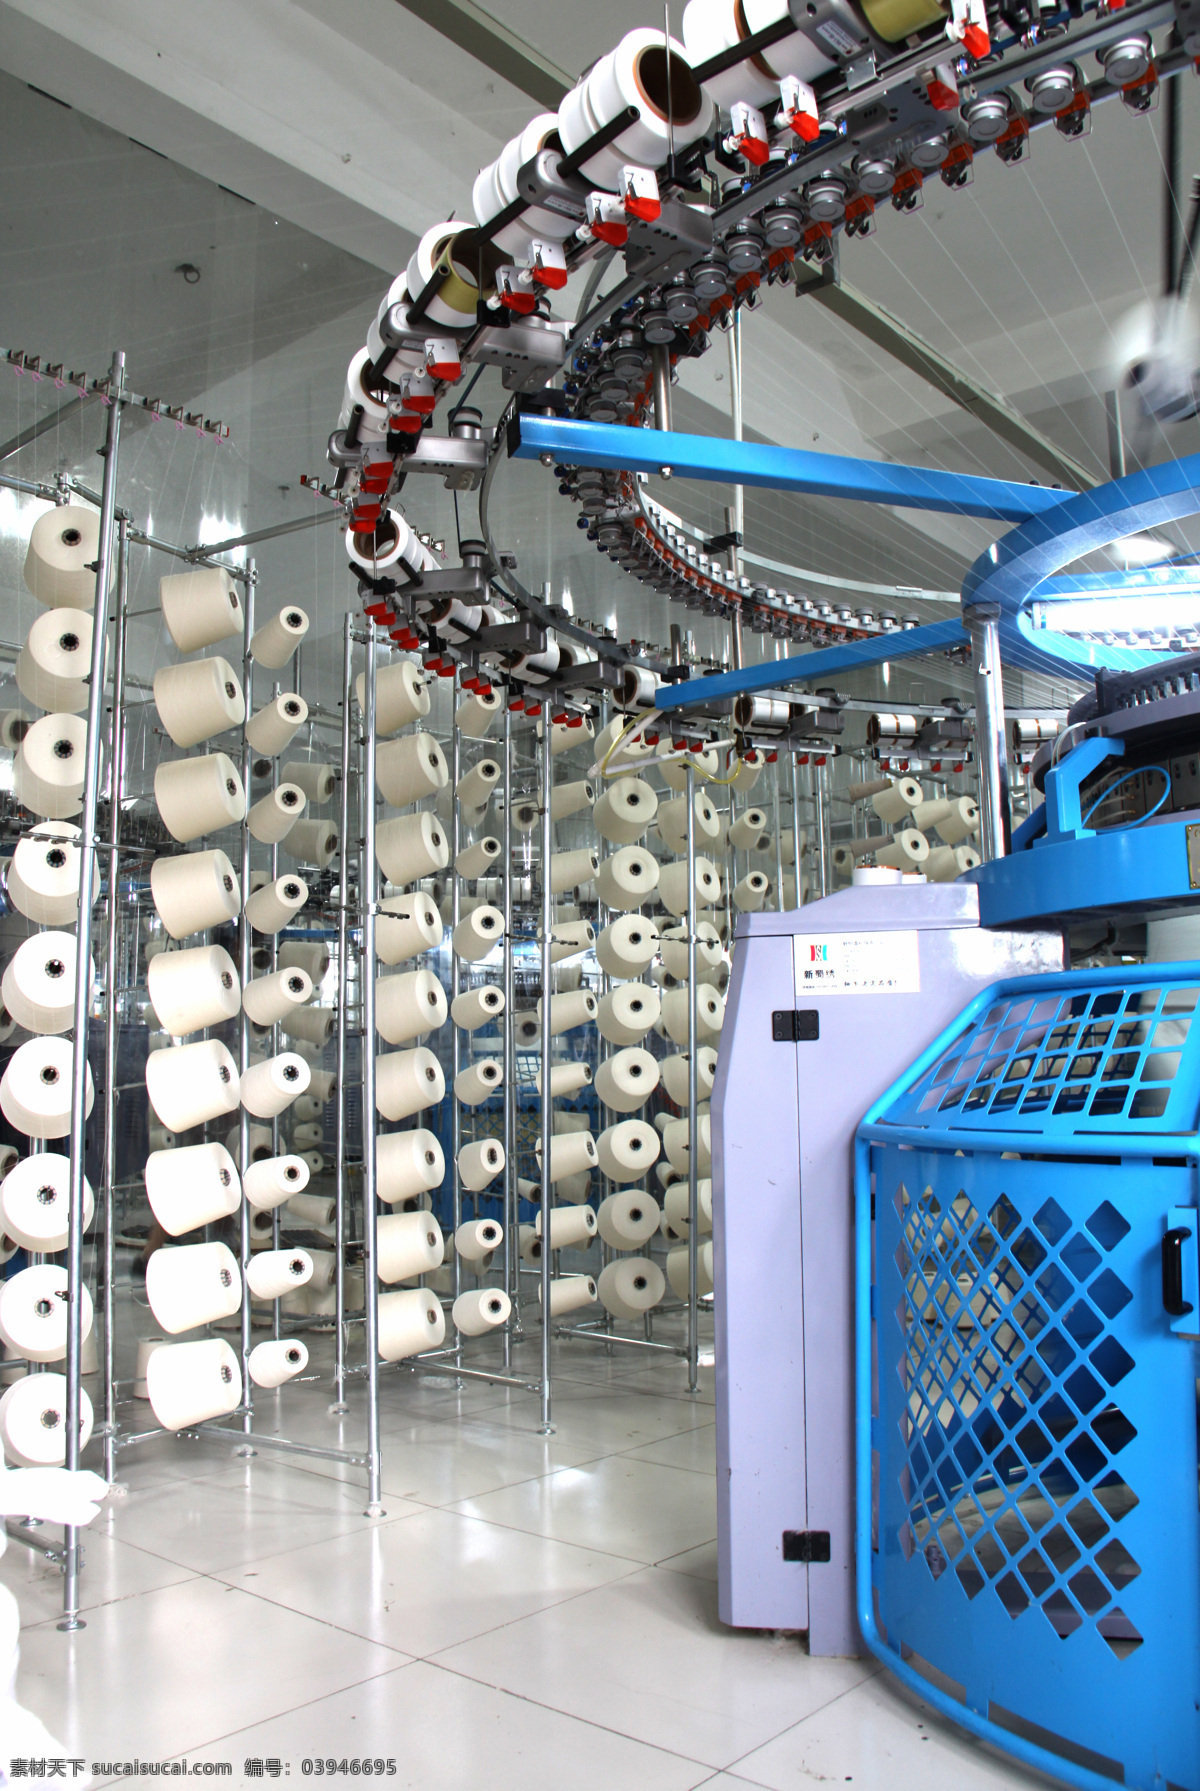 高清 纺织 机器 照片 纺织机器照片 纺织机器 设备 纺织厂 面料生产 布料 大场景 纺织机 工业生产 现代科技